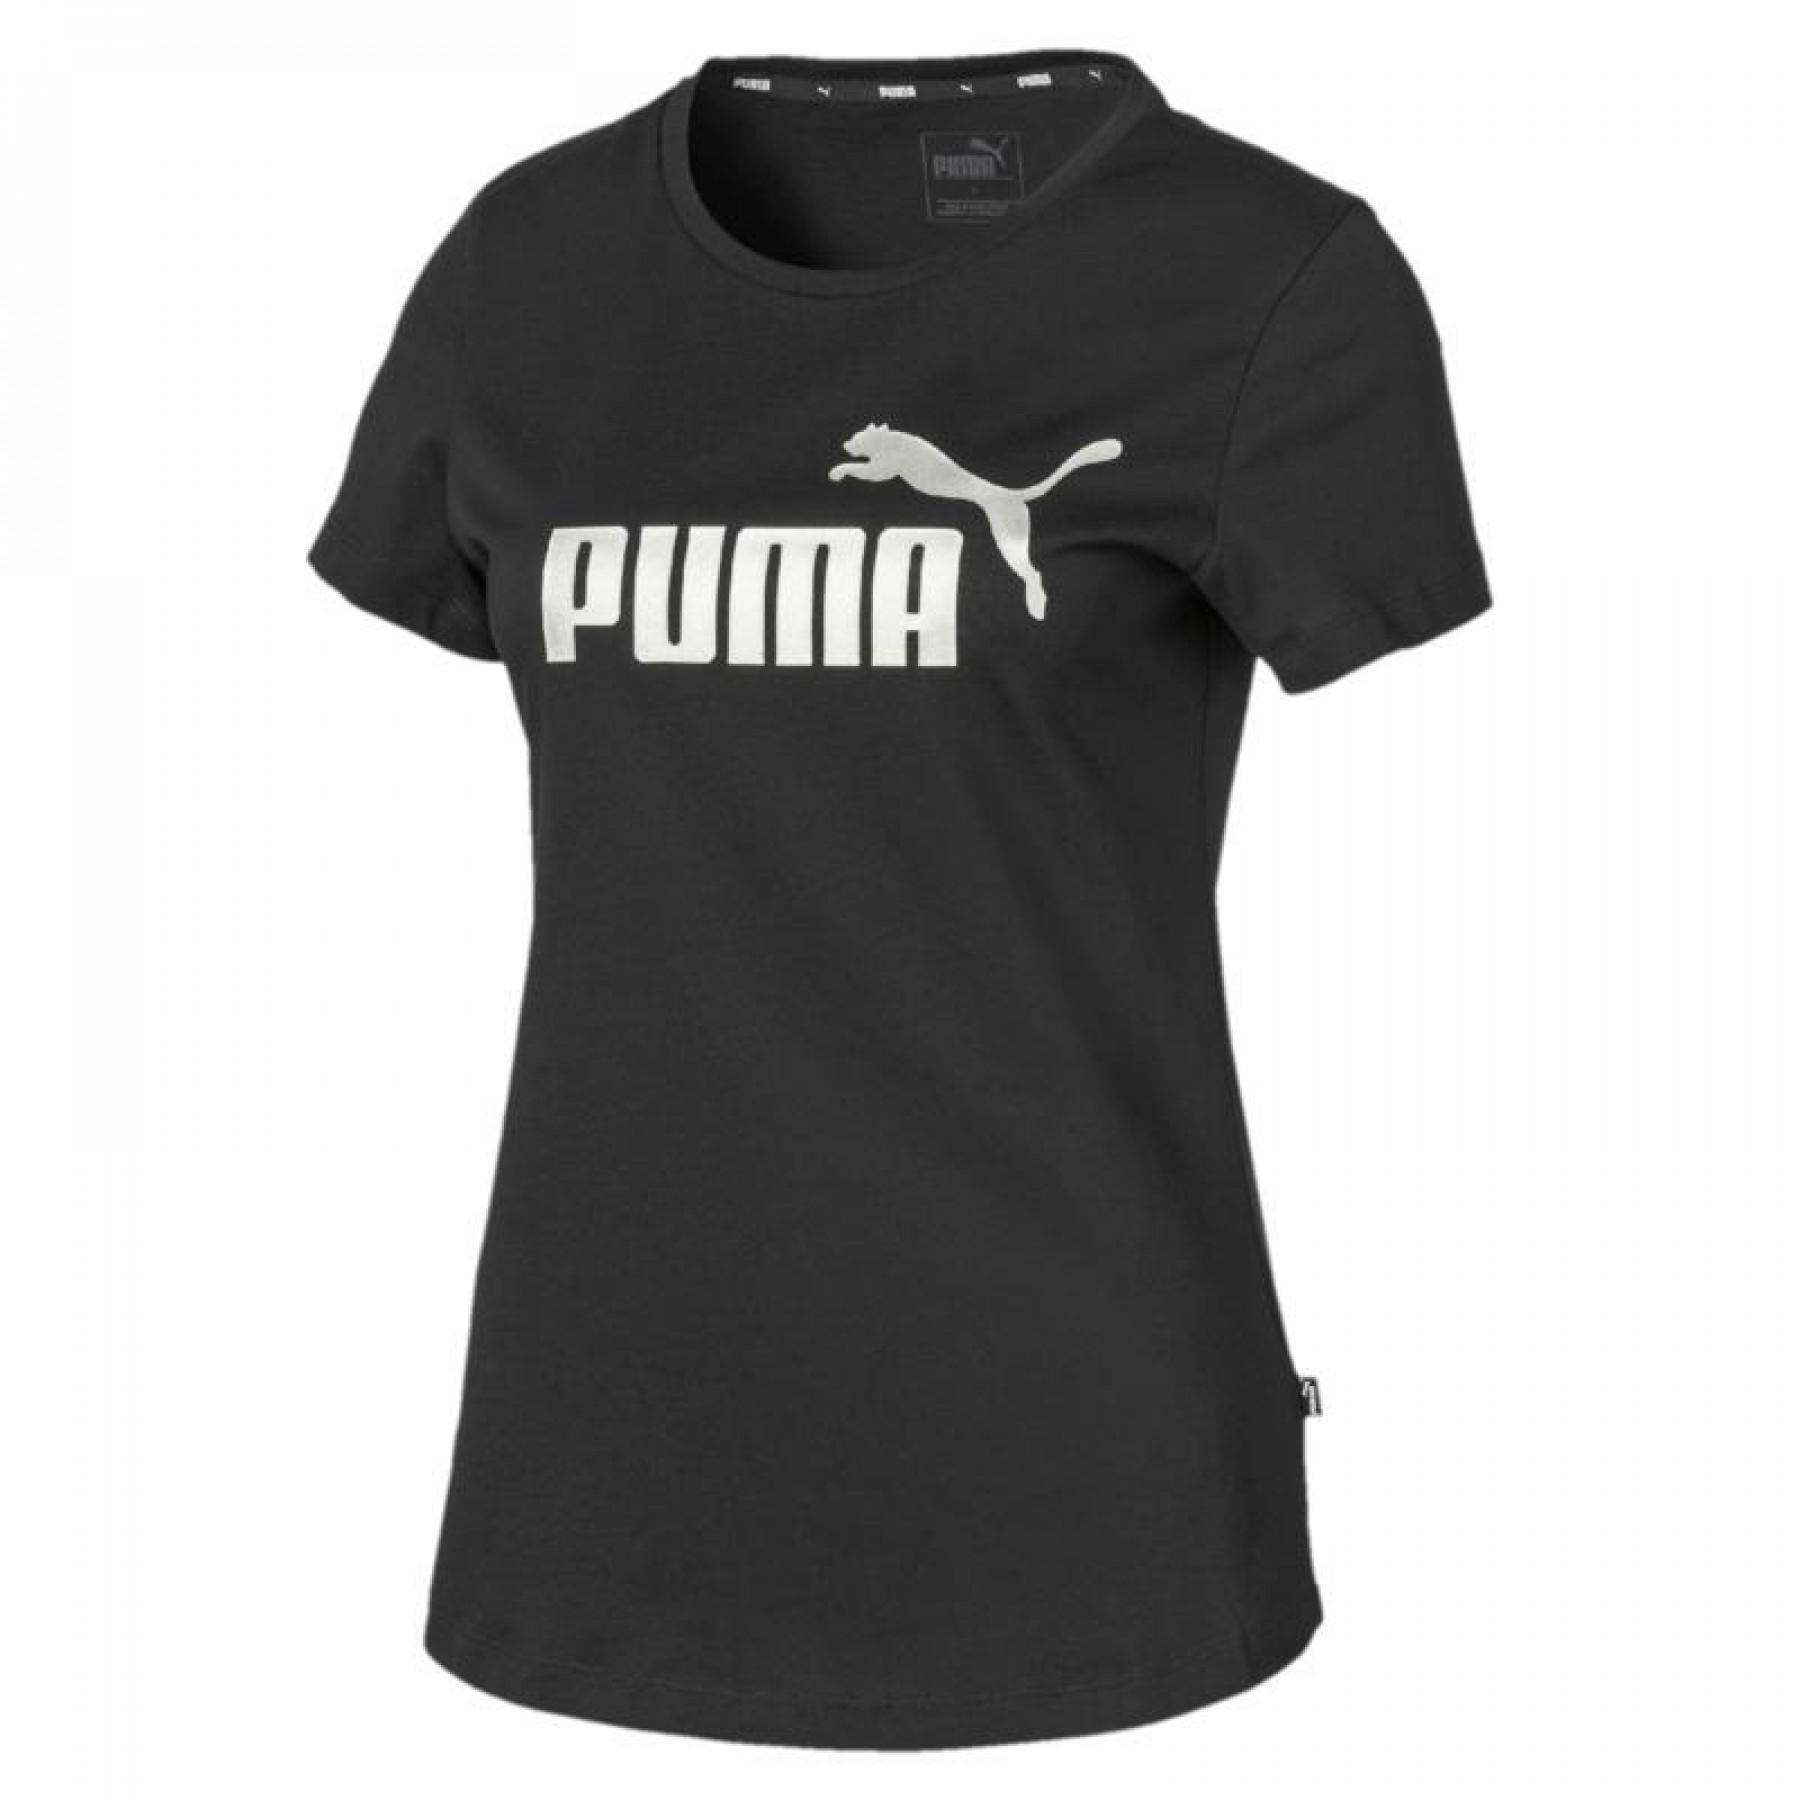 T-shirt Puma Women\'s essential